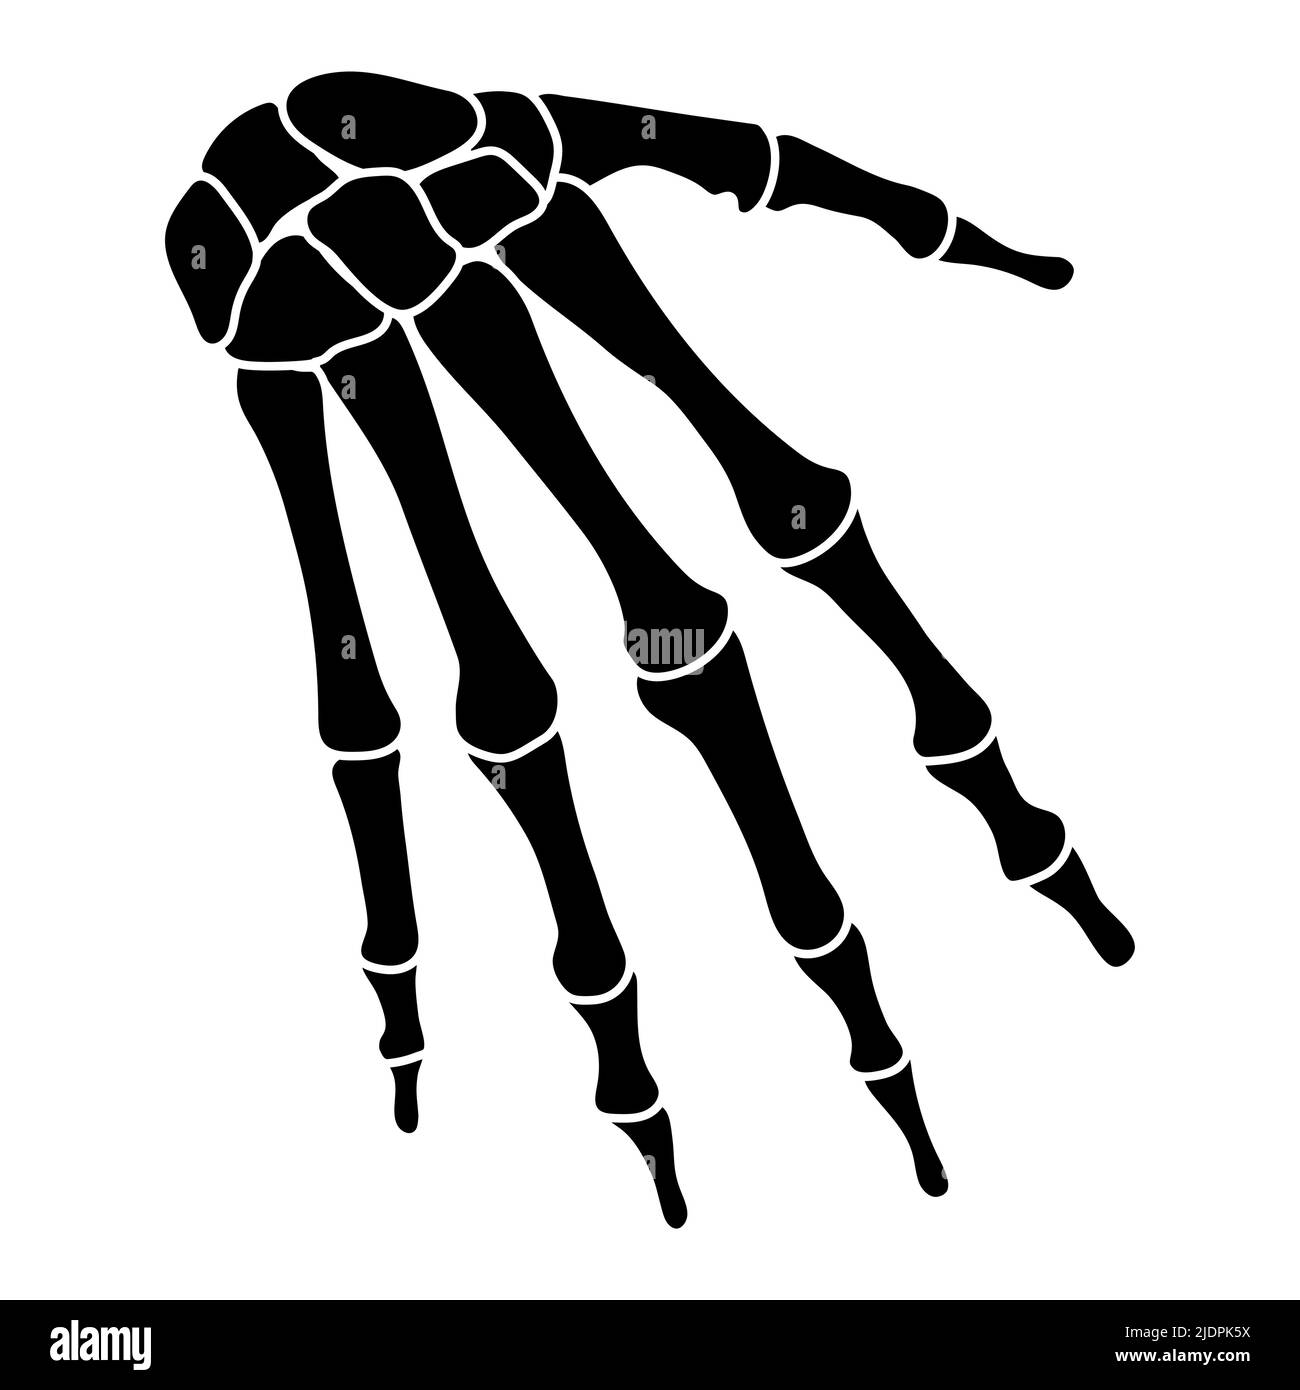 Skelett Hände menschliche Silhouette Körperknochen - Karpale, Handgelenk, Metacarpale, Pals, Vorderseite Vorderansicht flache schwarze Farbe Konzept Vektor Illustration der Anatomie auf weißem Hintergrund isoliert Stock Vektor